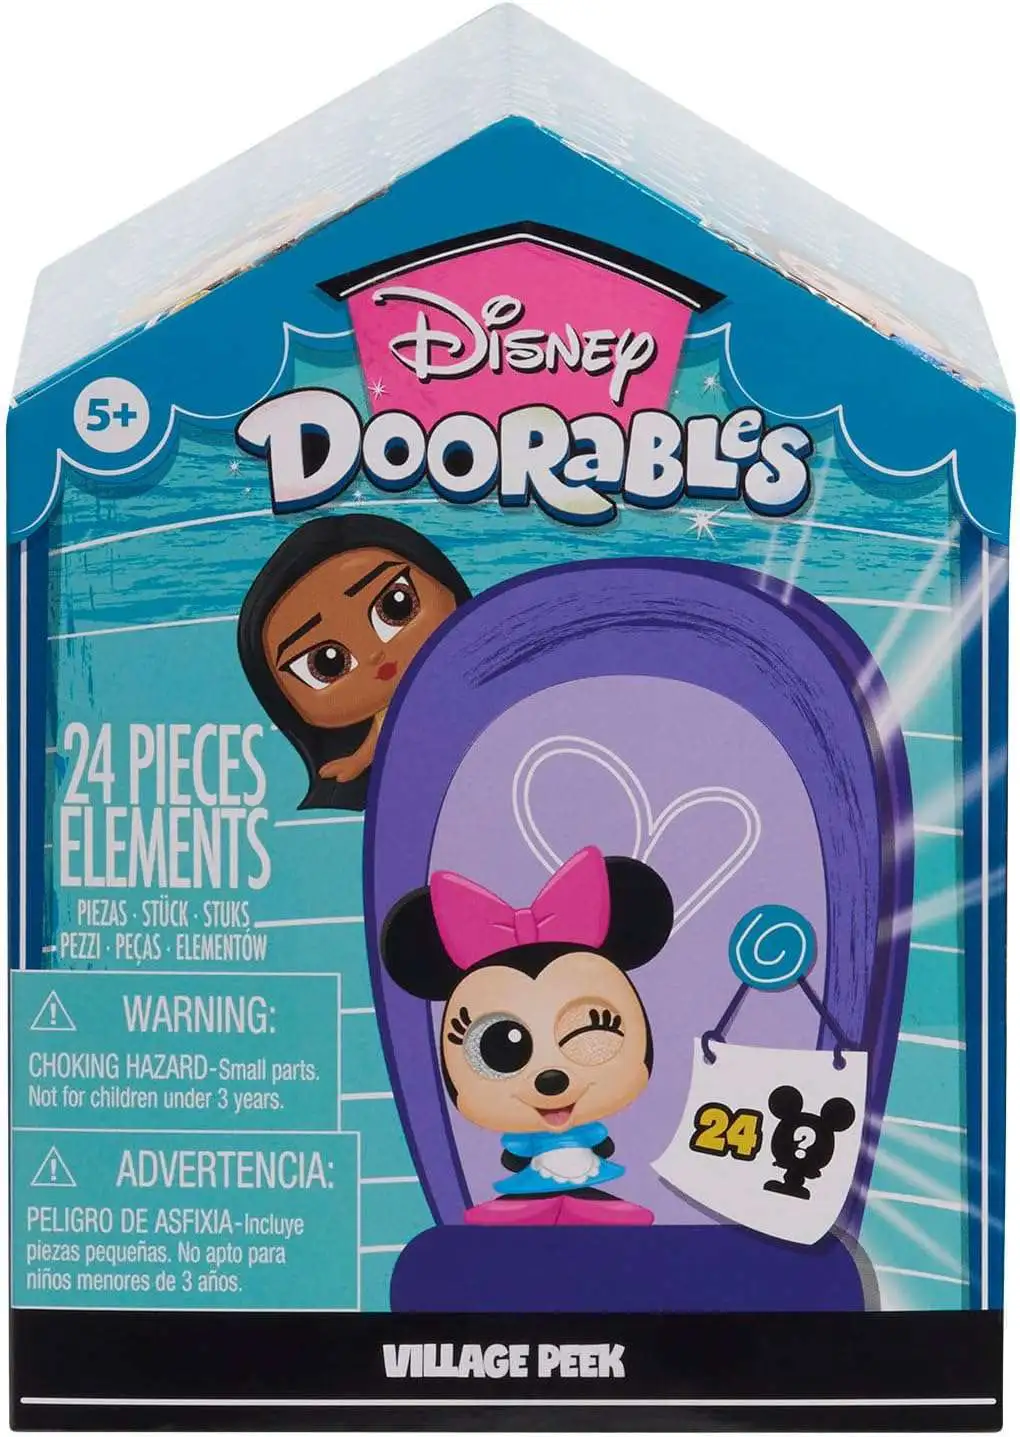 Disney Doorables Ultimate Mega Peek - Just Play